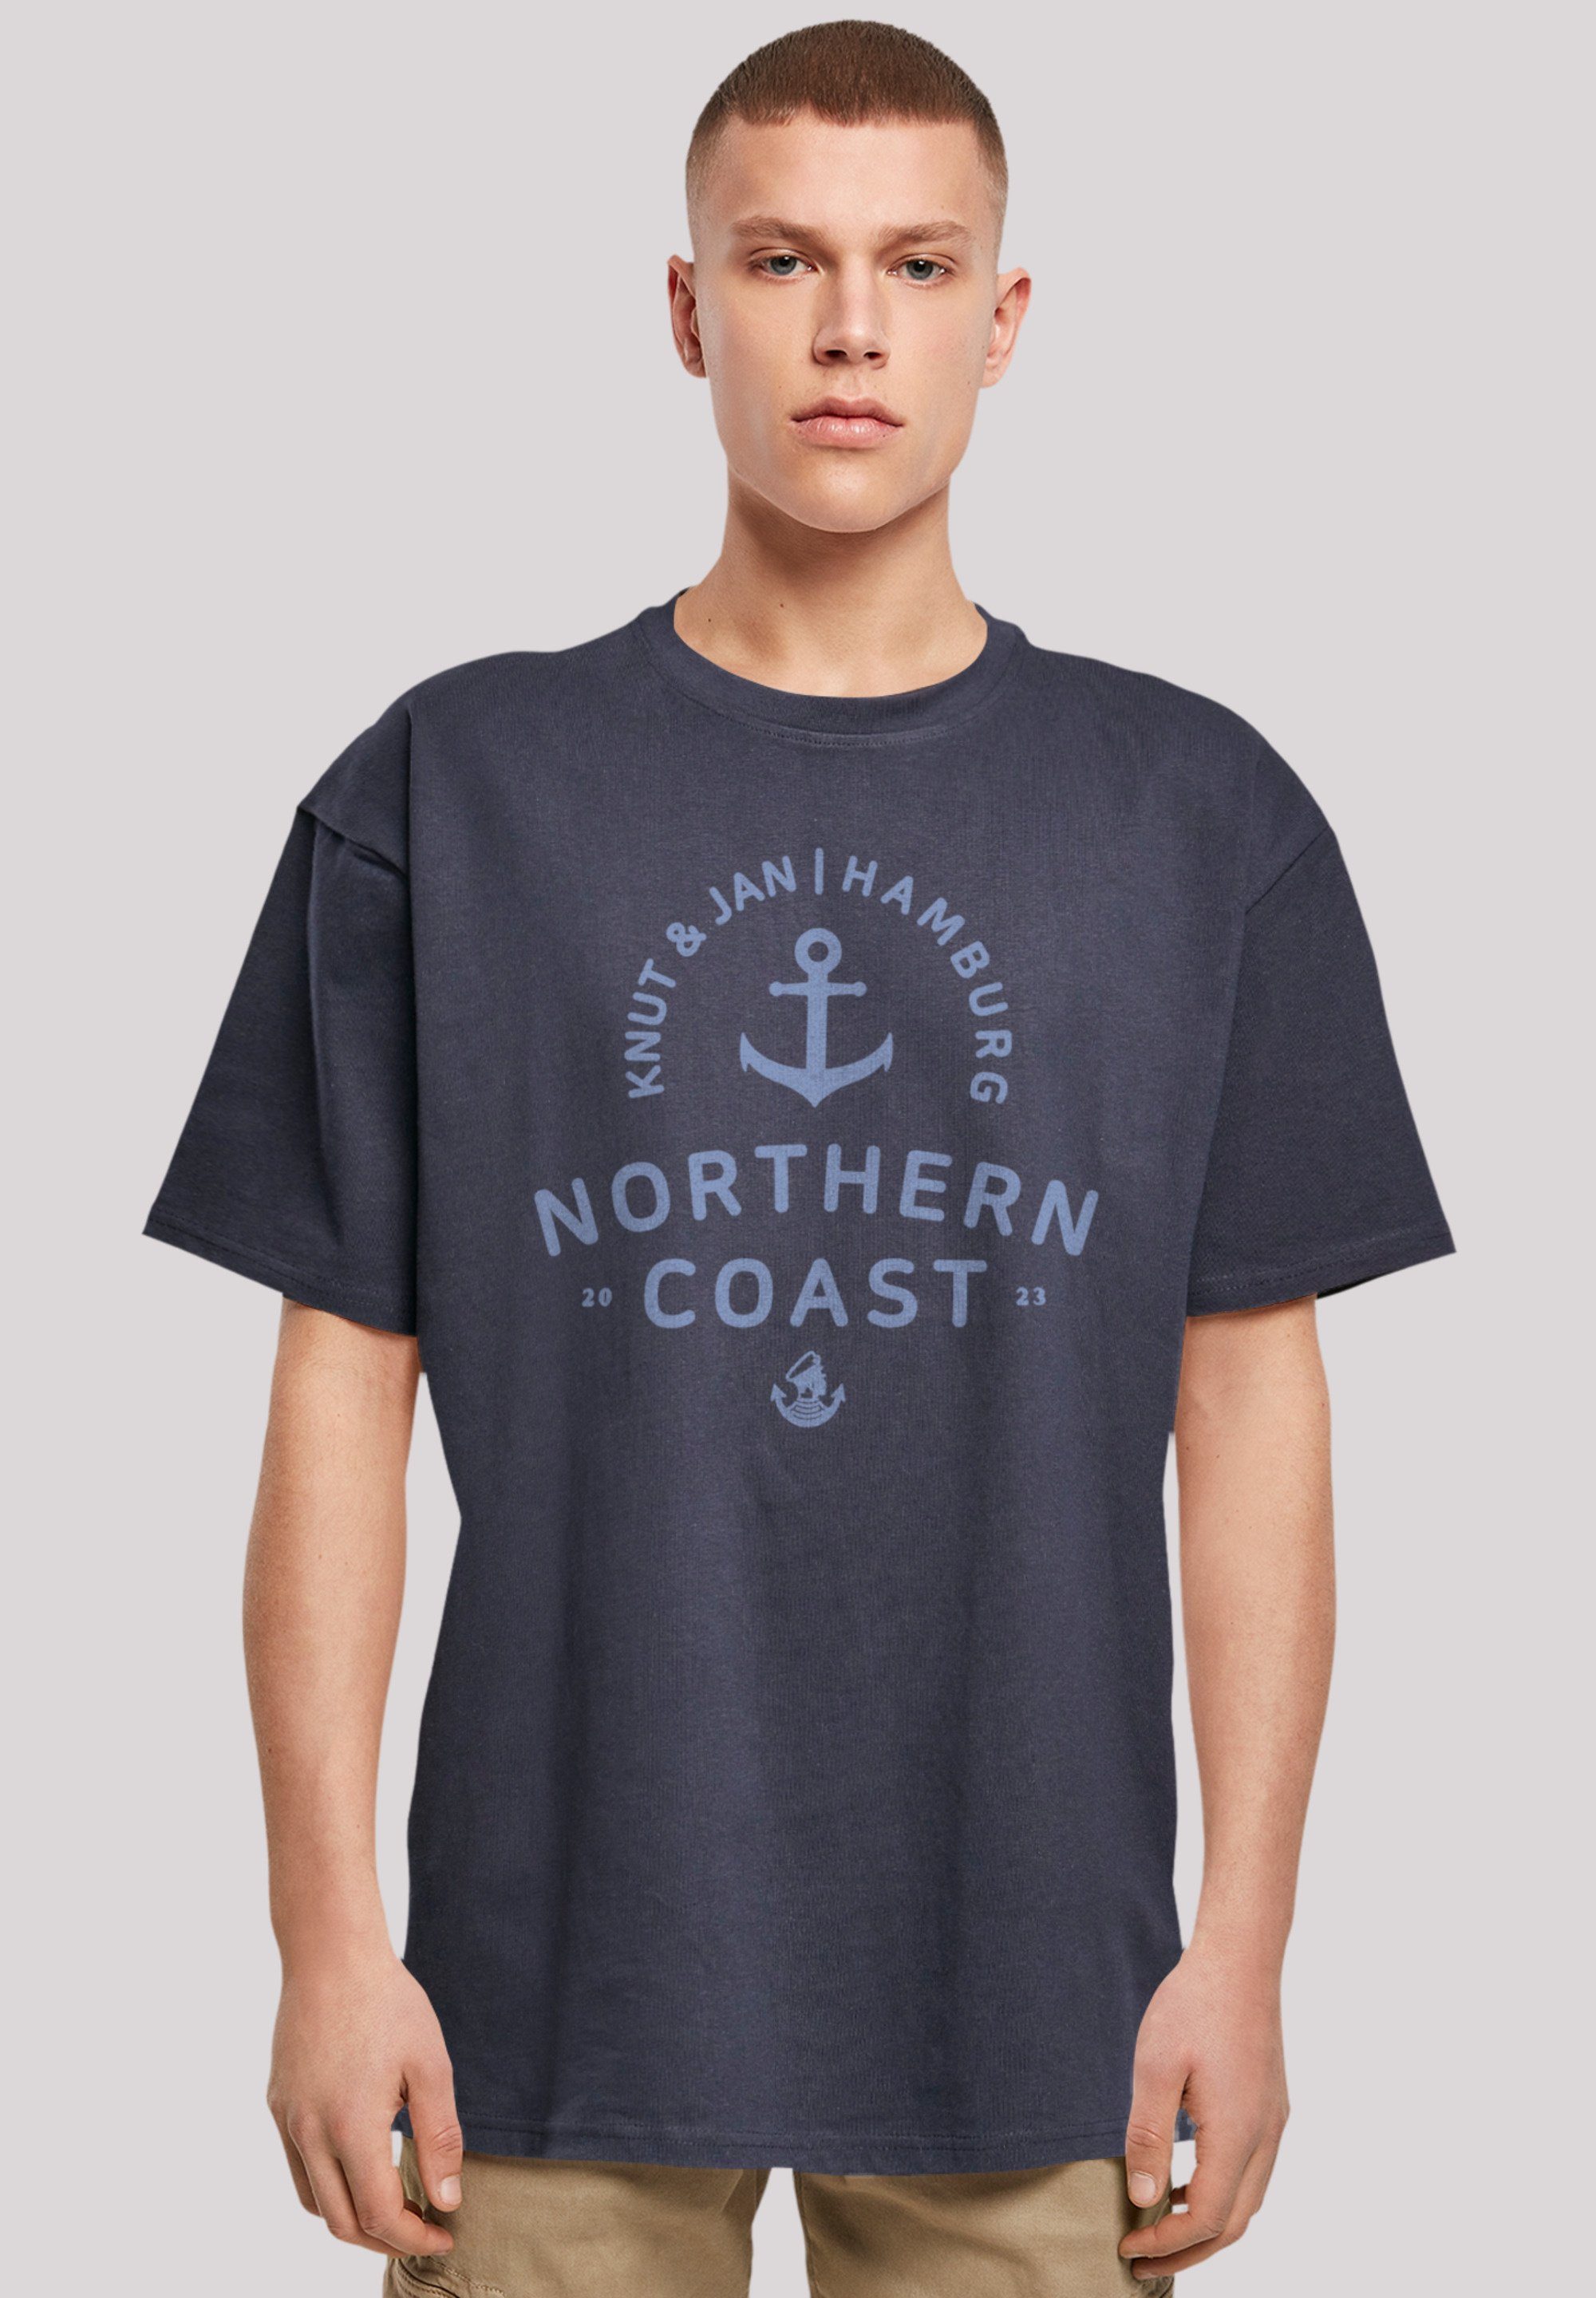 F4NT4STIC T-Shirt Nordsee Knut & Jan Hamburg Print, Fällt weit aus, bitte  eine Größe kleiner bestellen